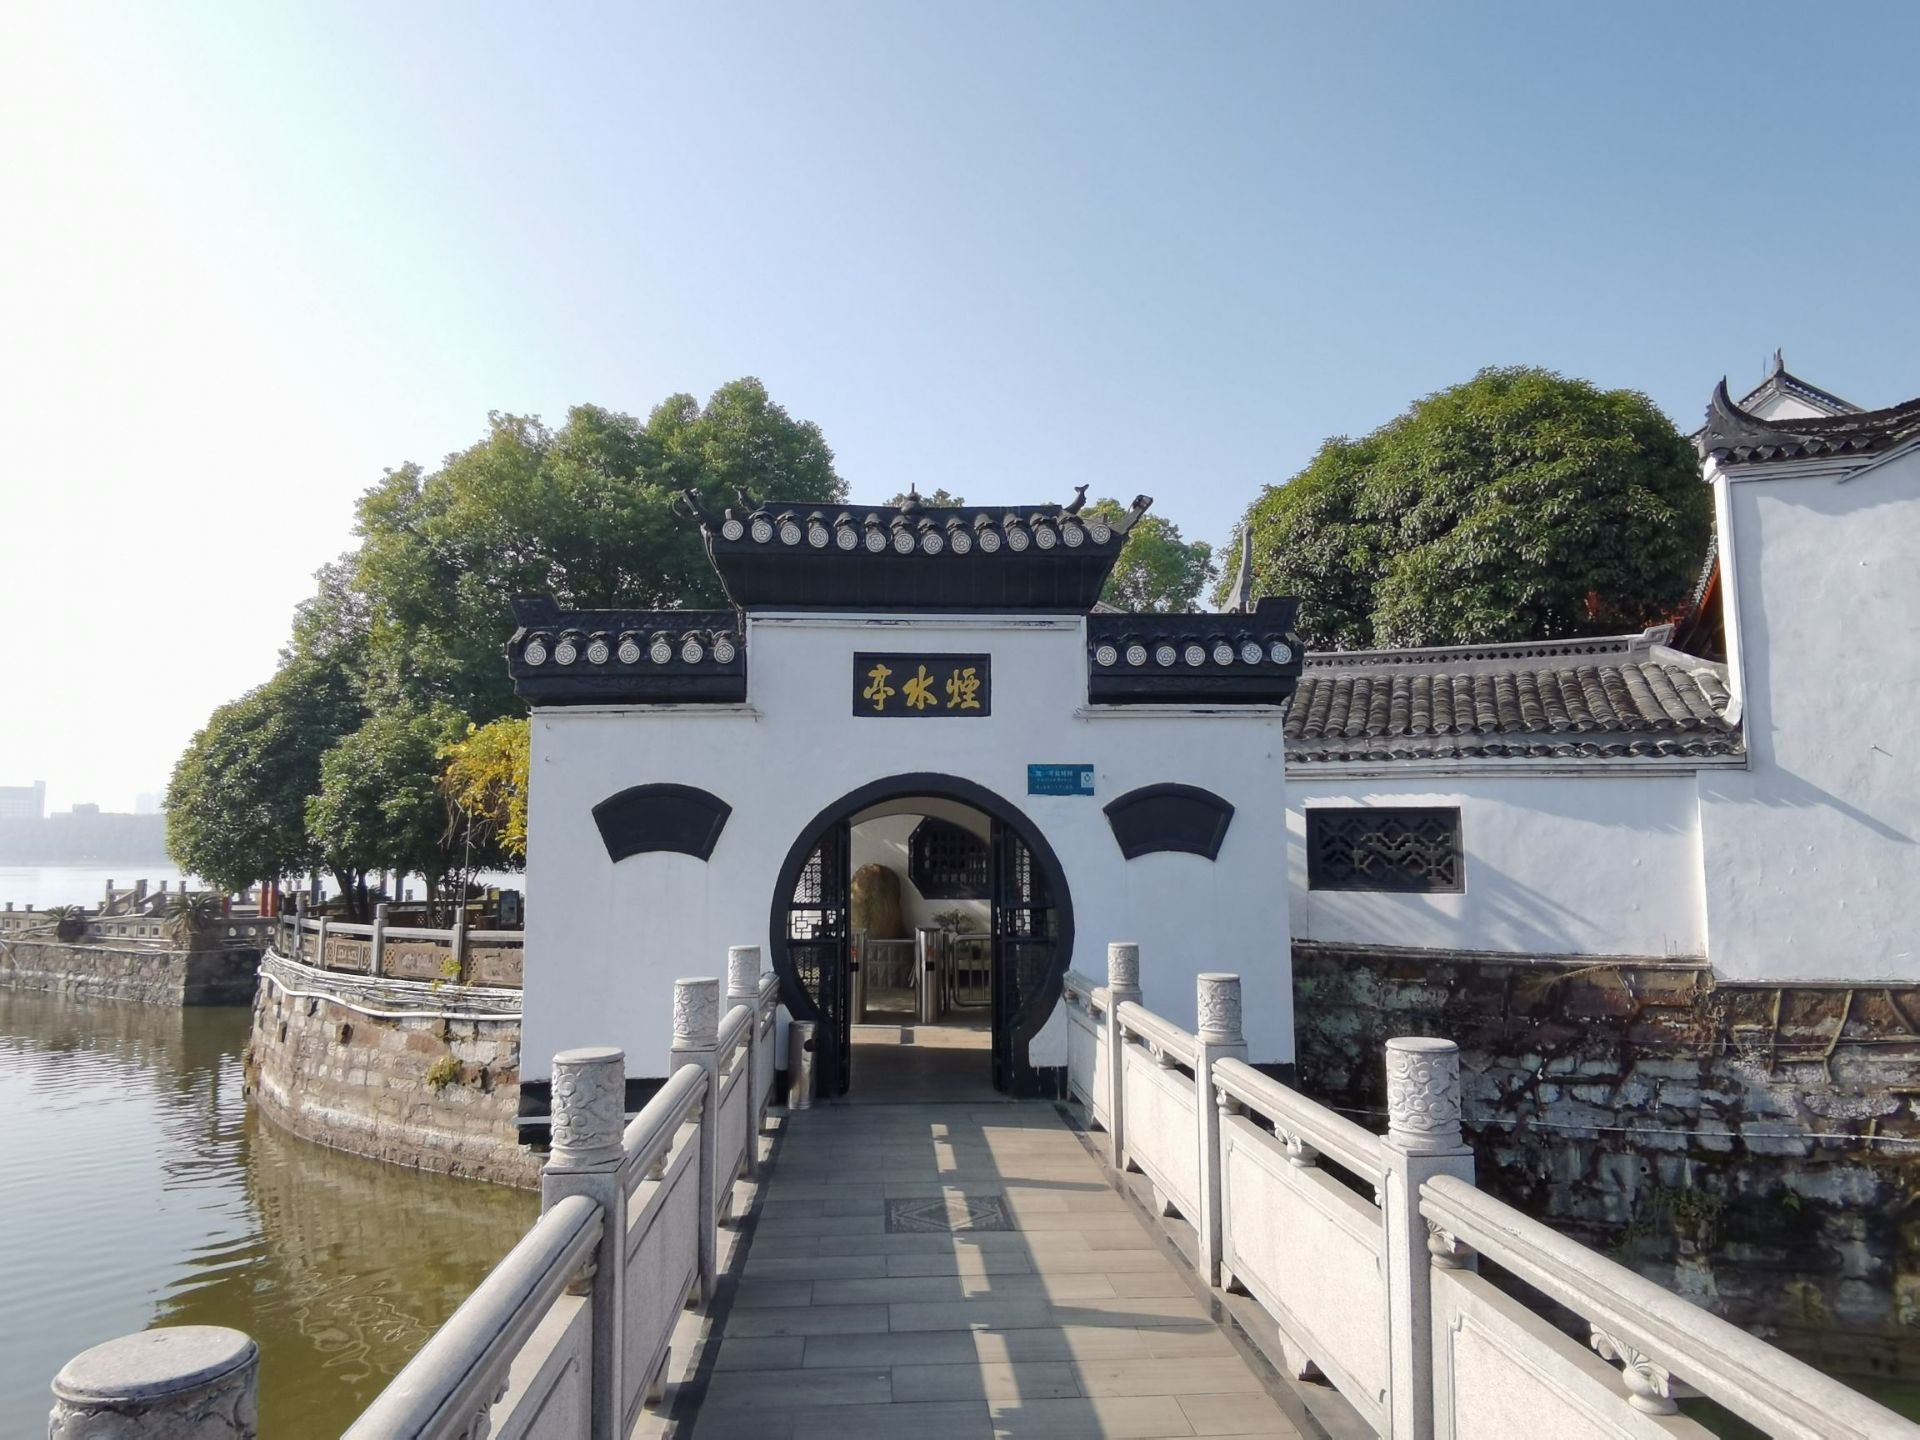 烟水亭,位于江西省九江市长江南岸的甘棠湖中,为江西省九江市著名景点